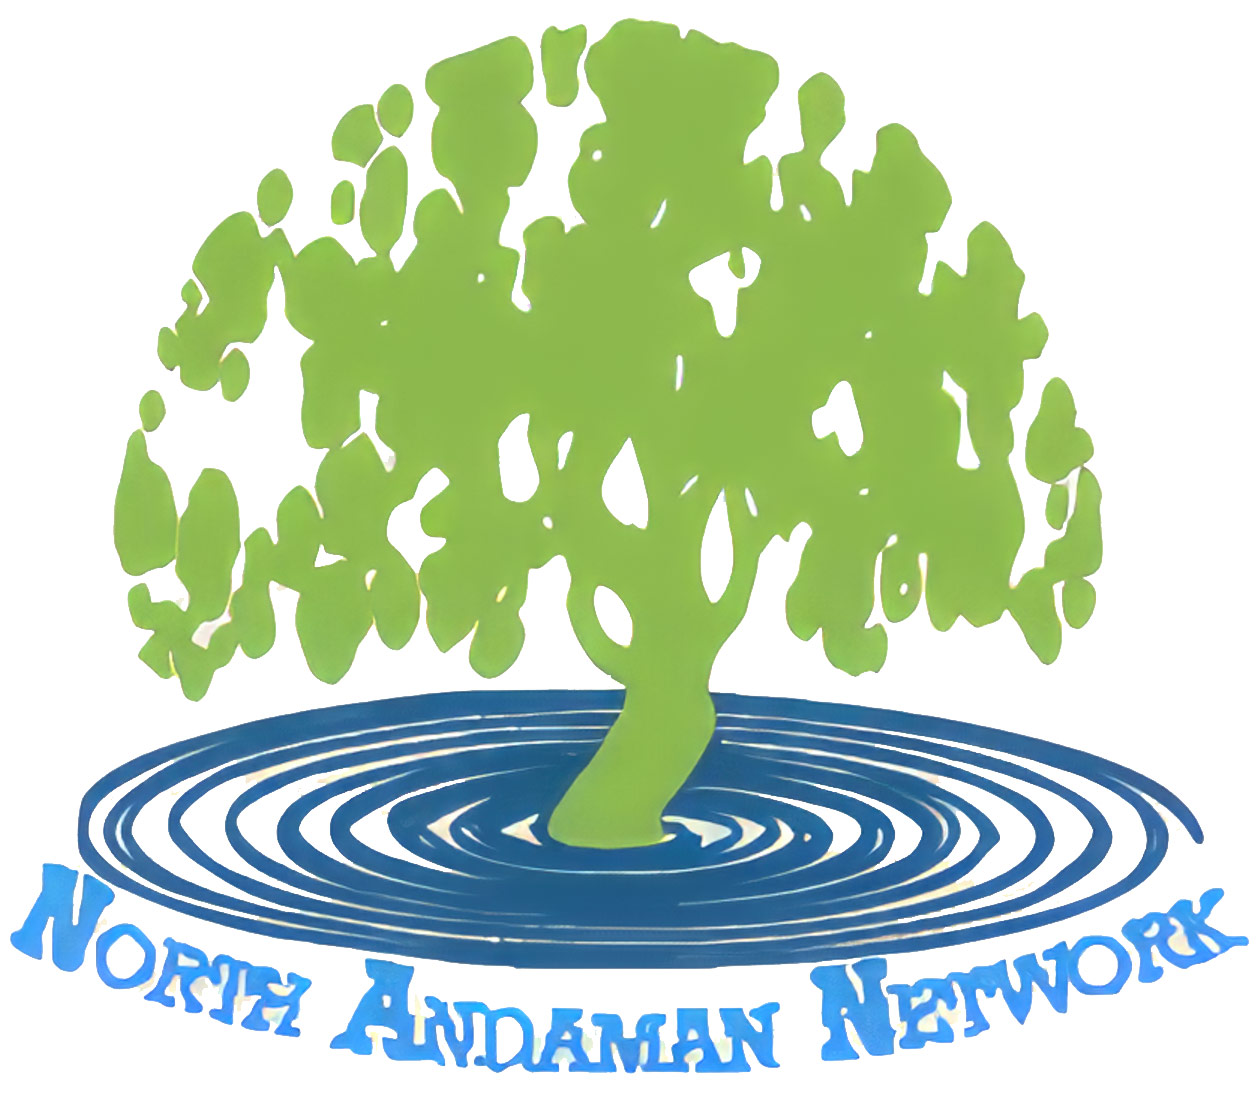 North Andaman Network Foundation (NAN)